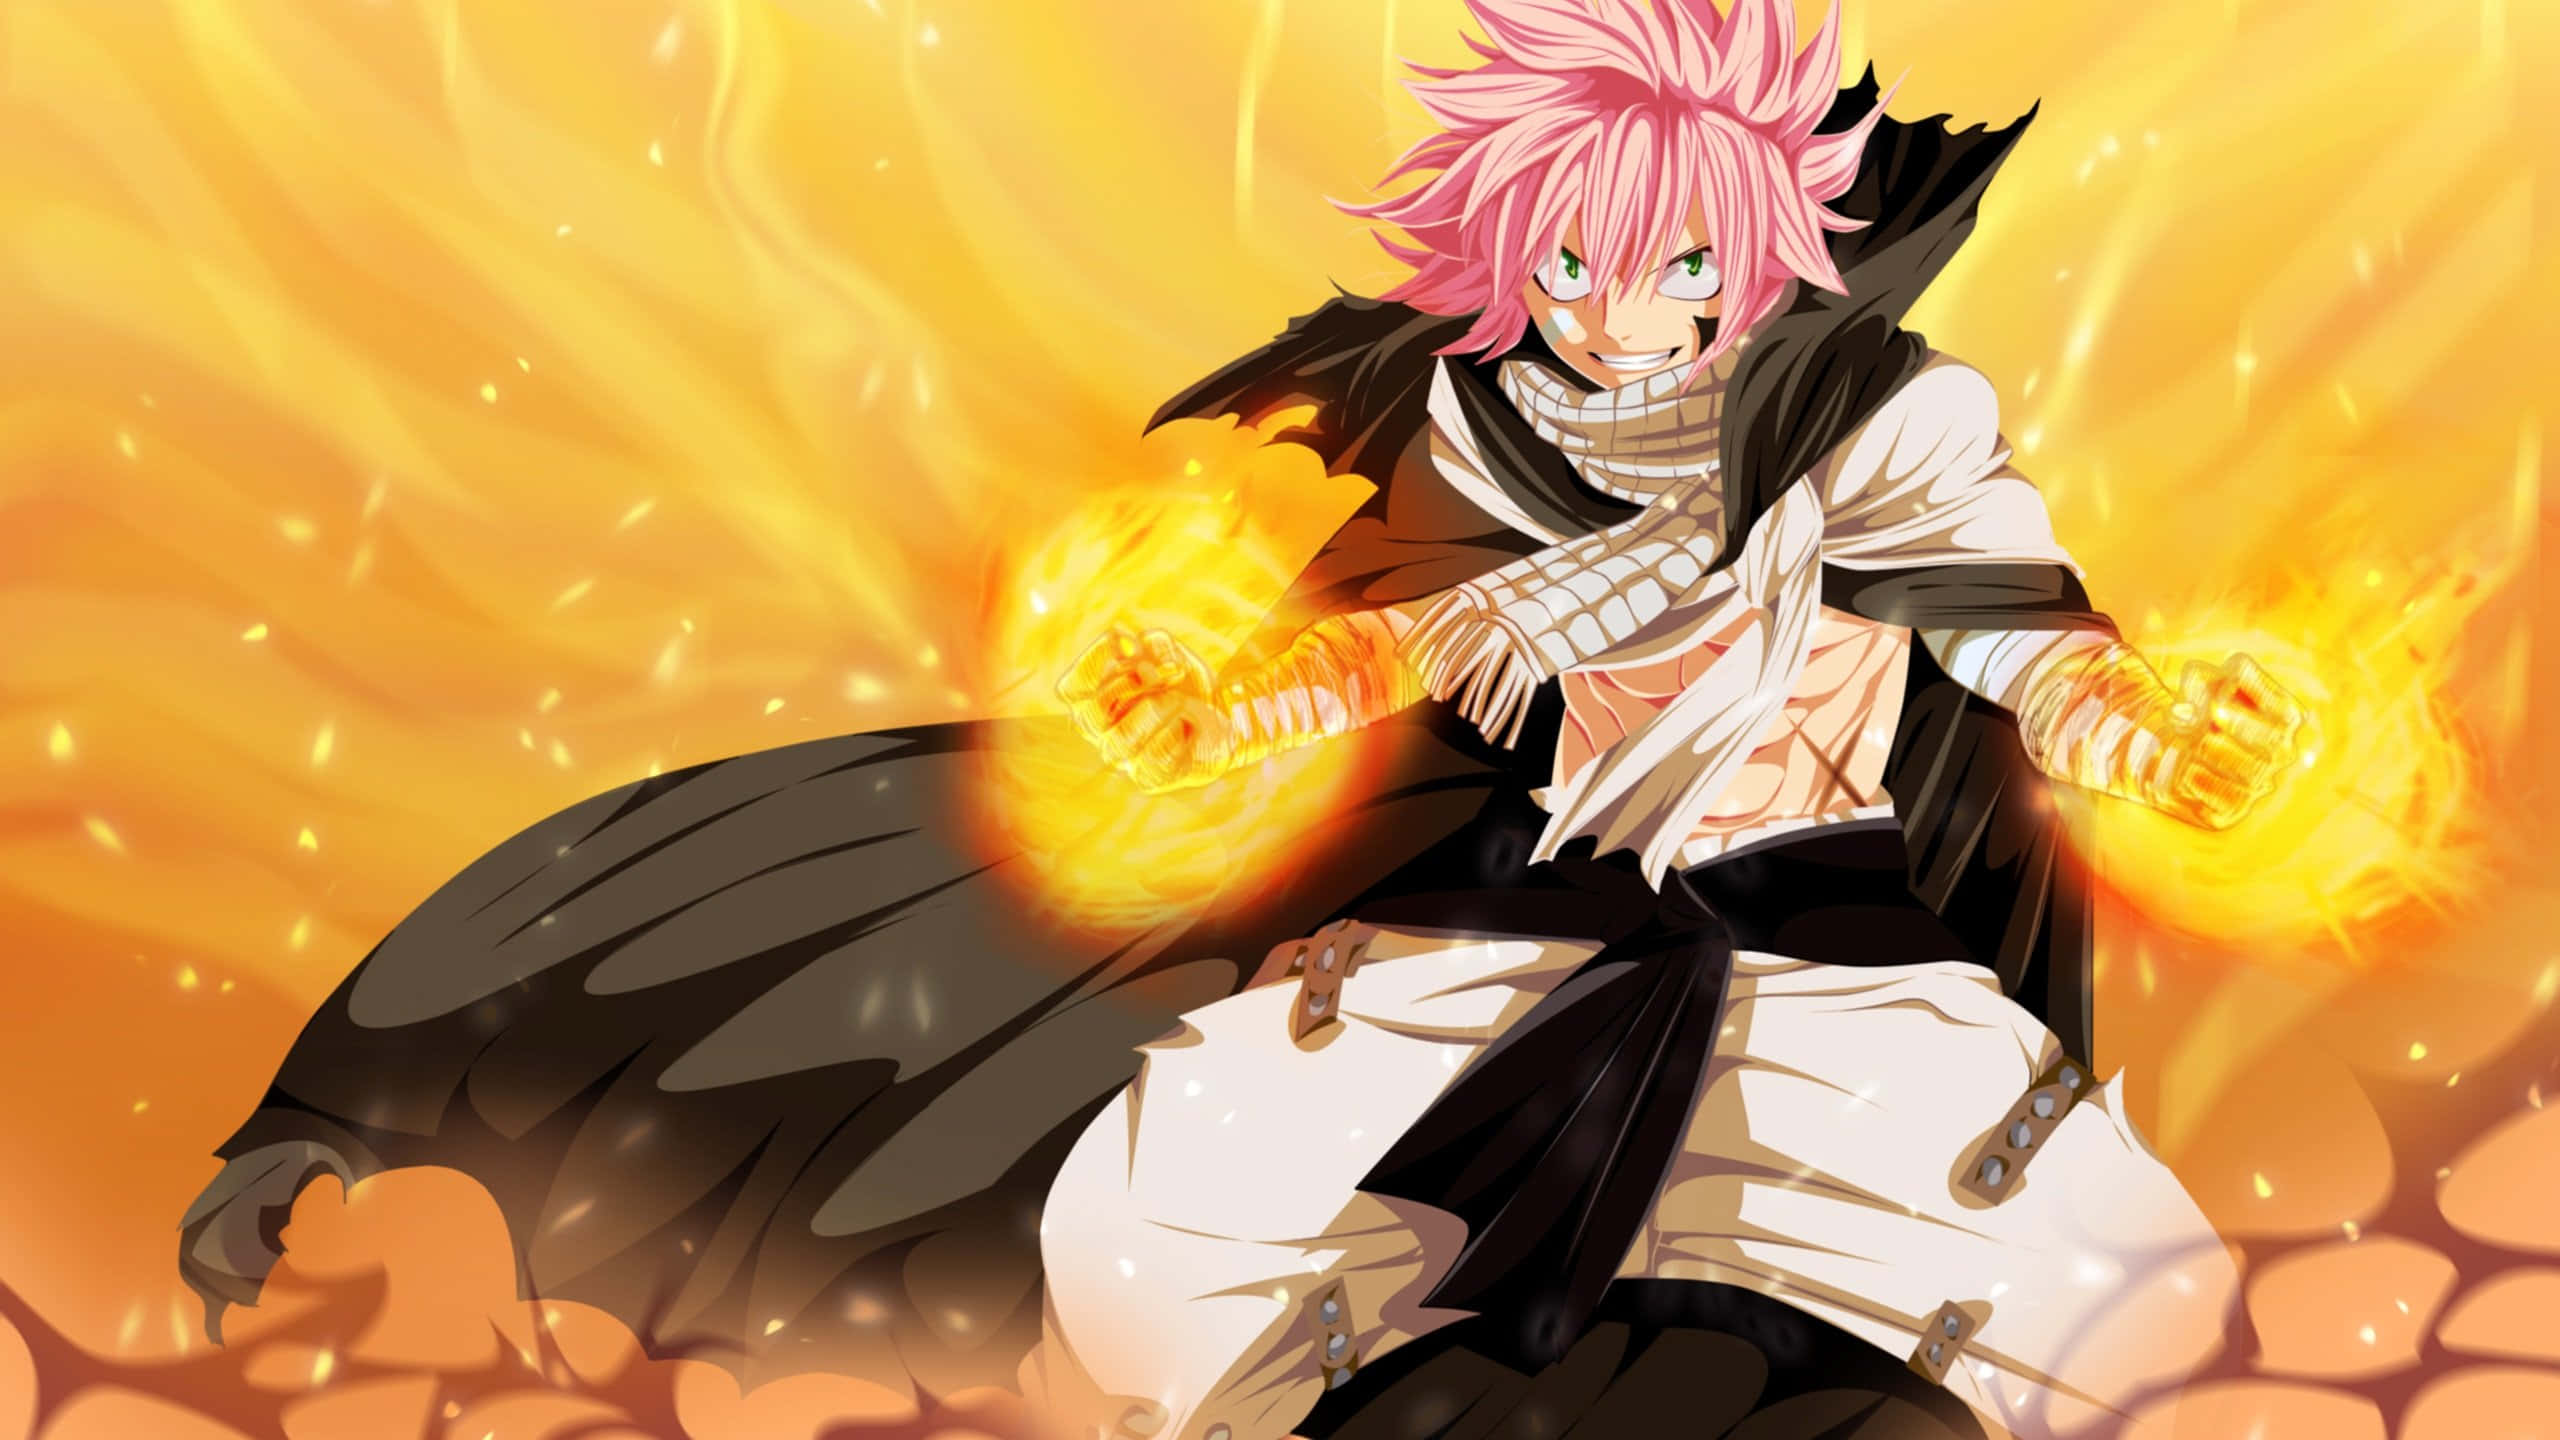 Natsu Dragneel Unleashing Power In A Fiery Battle Background